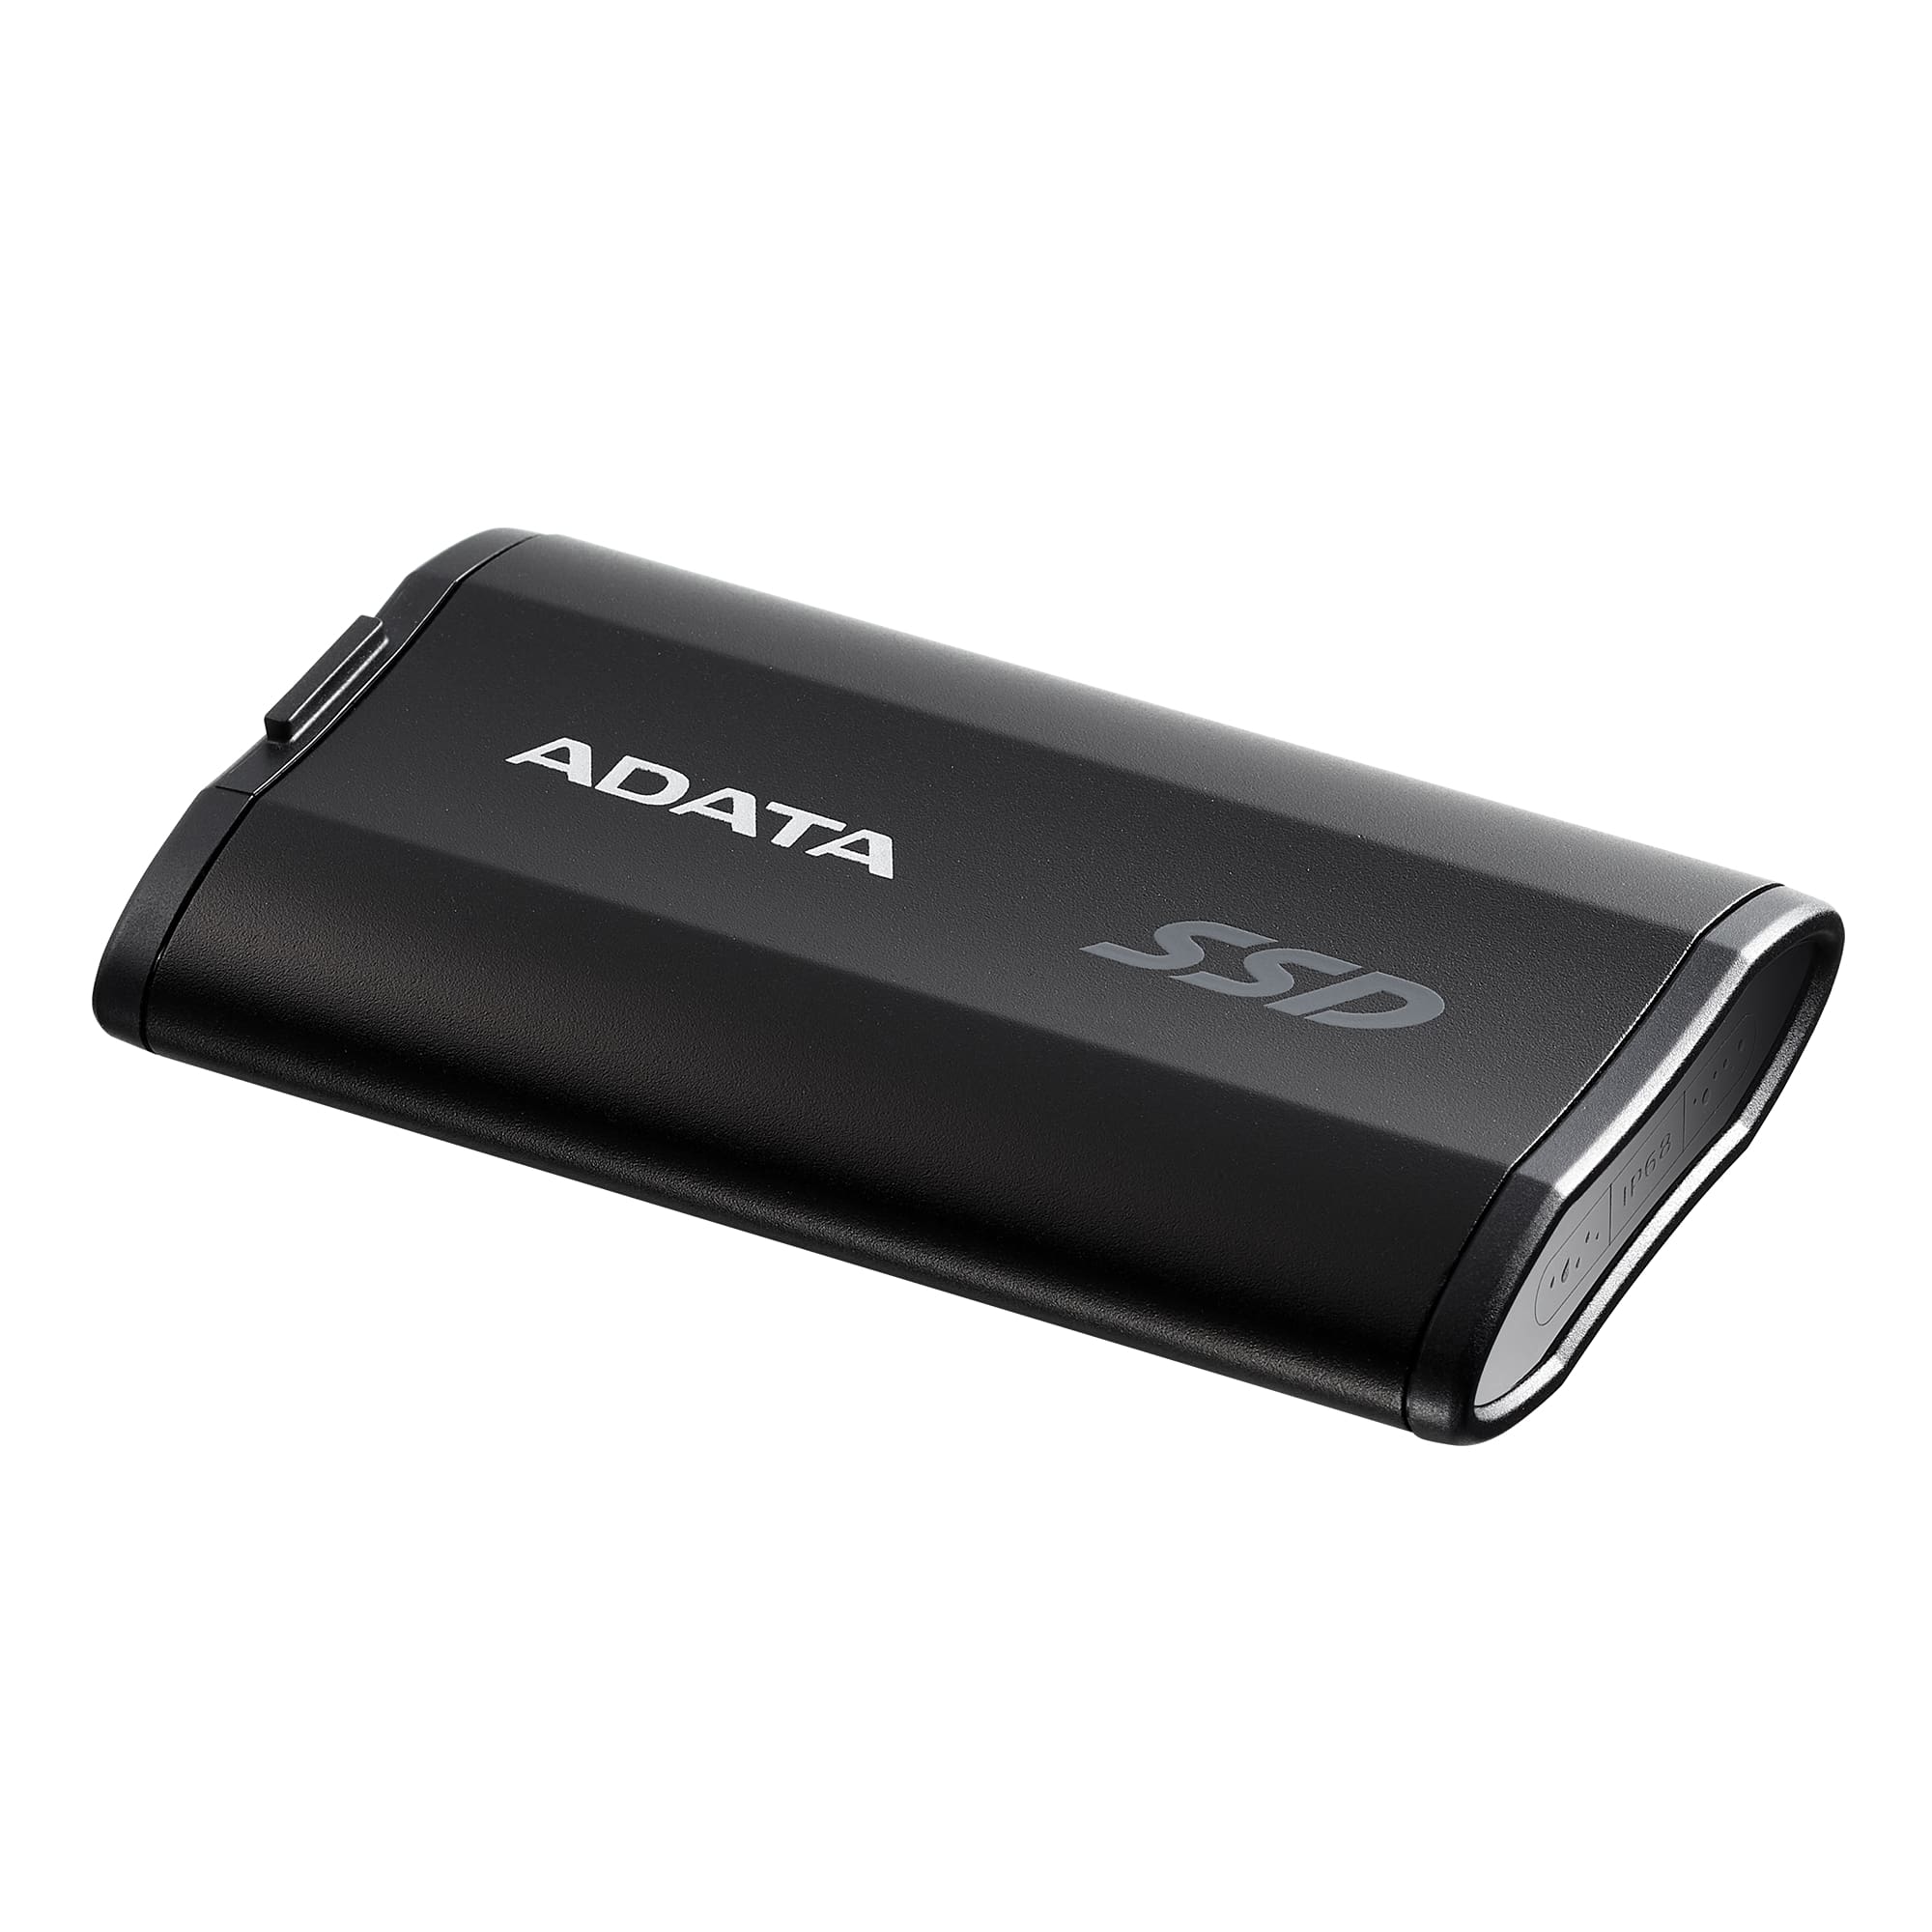 ADATA SD810/ 1TB/ SSD/ Externí/ Černá/ 5R 